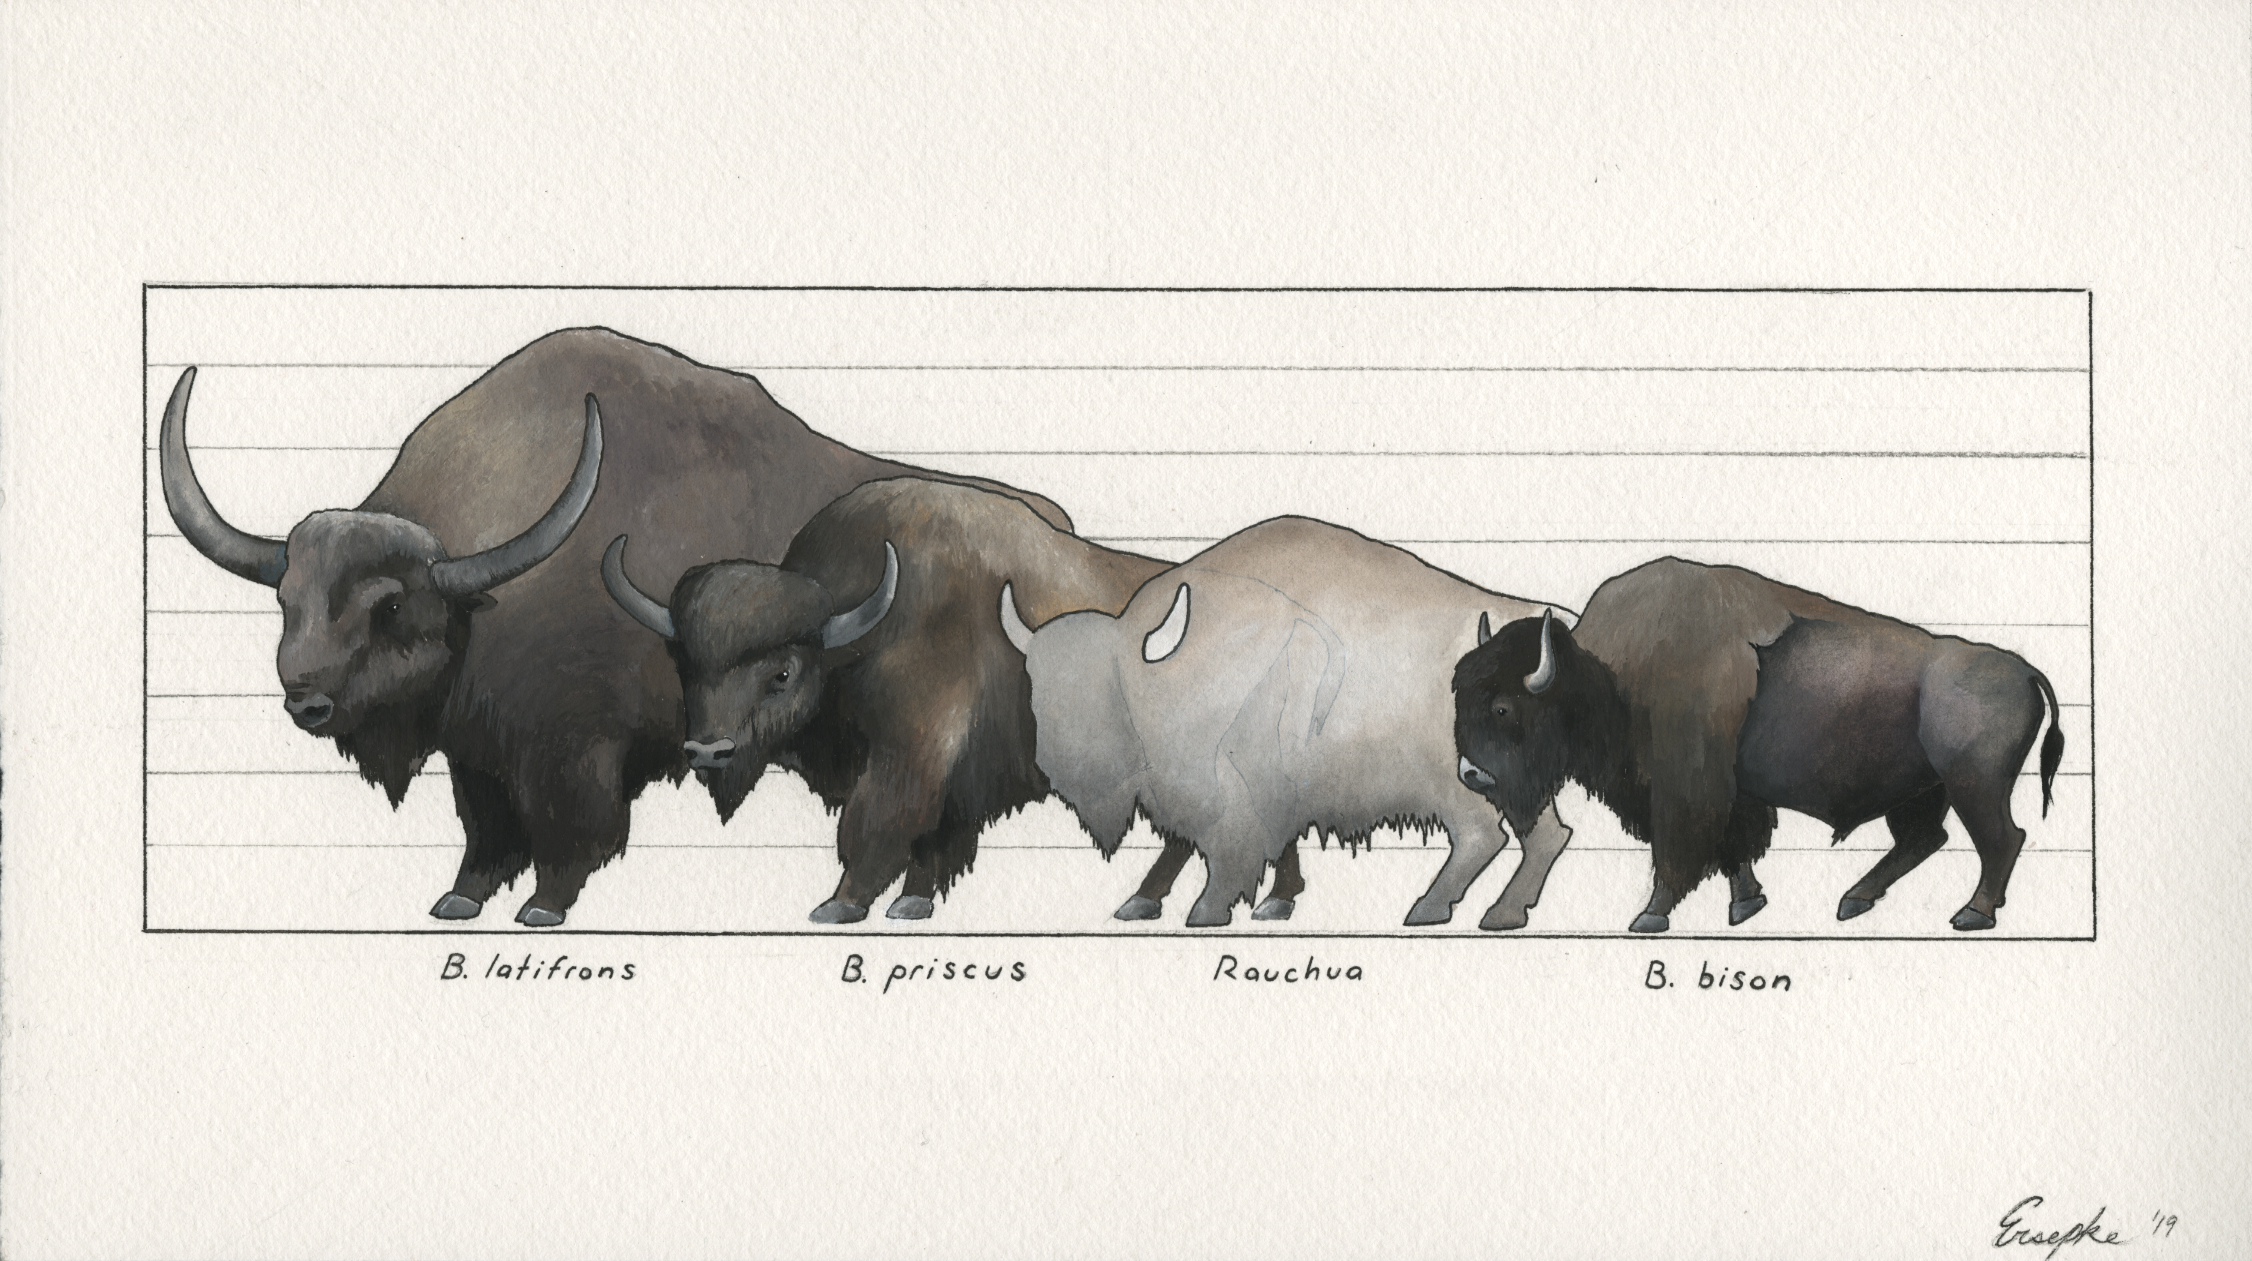 size comparison of various bison species